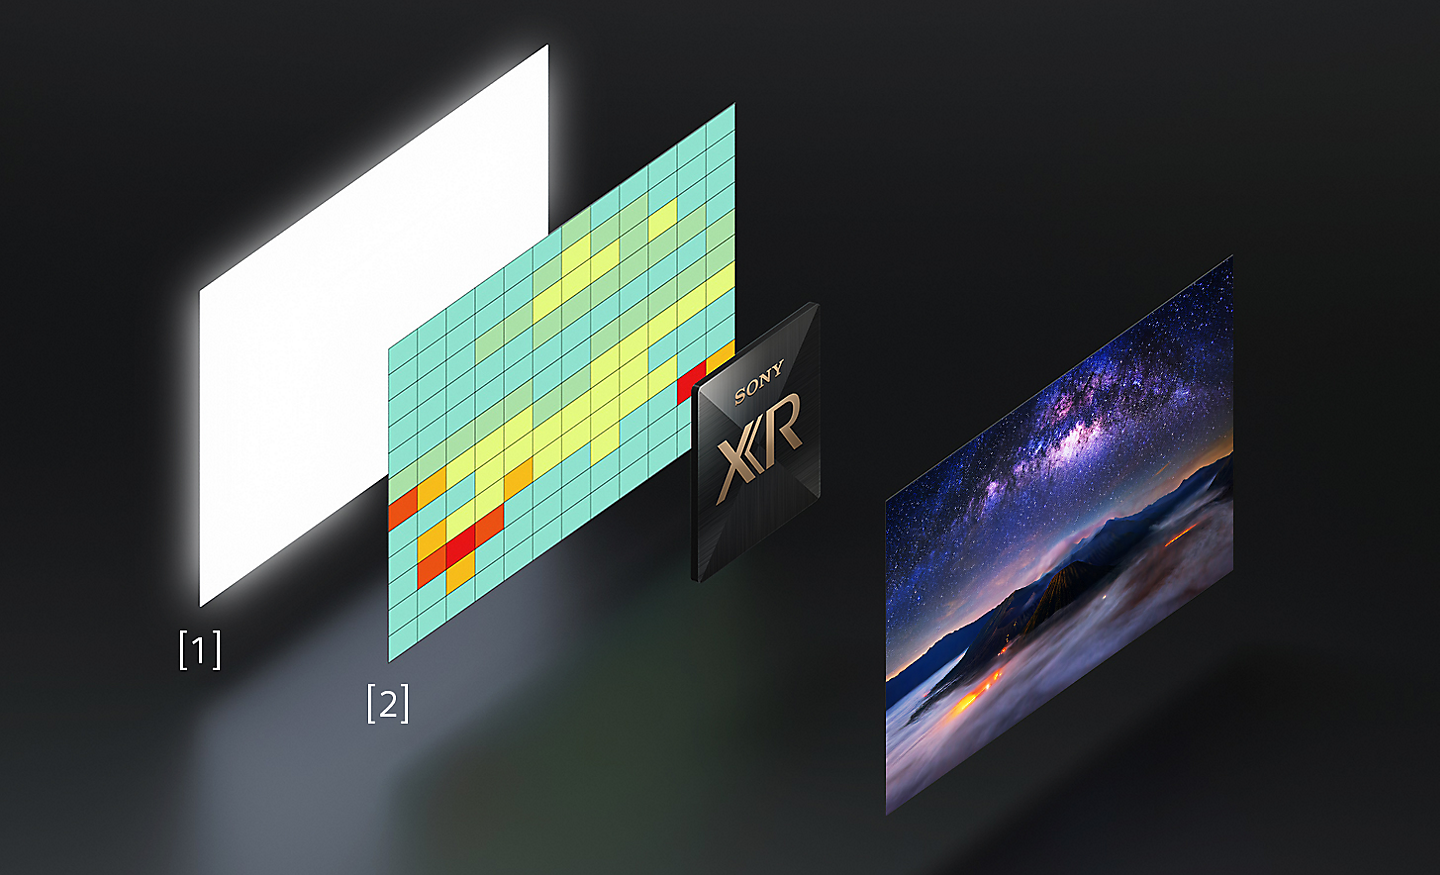 圖片左側為斜視的高亮度面板和色溫分佈圖，右側為展示完整色彩的 BRAVIA 螢幕斜視圖